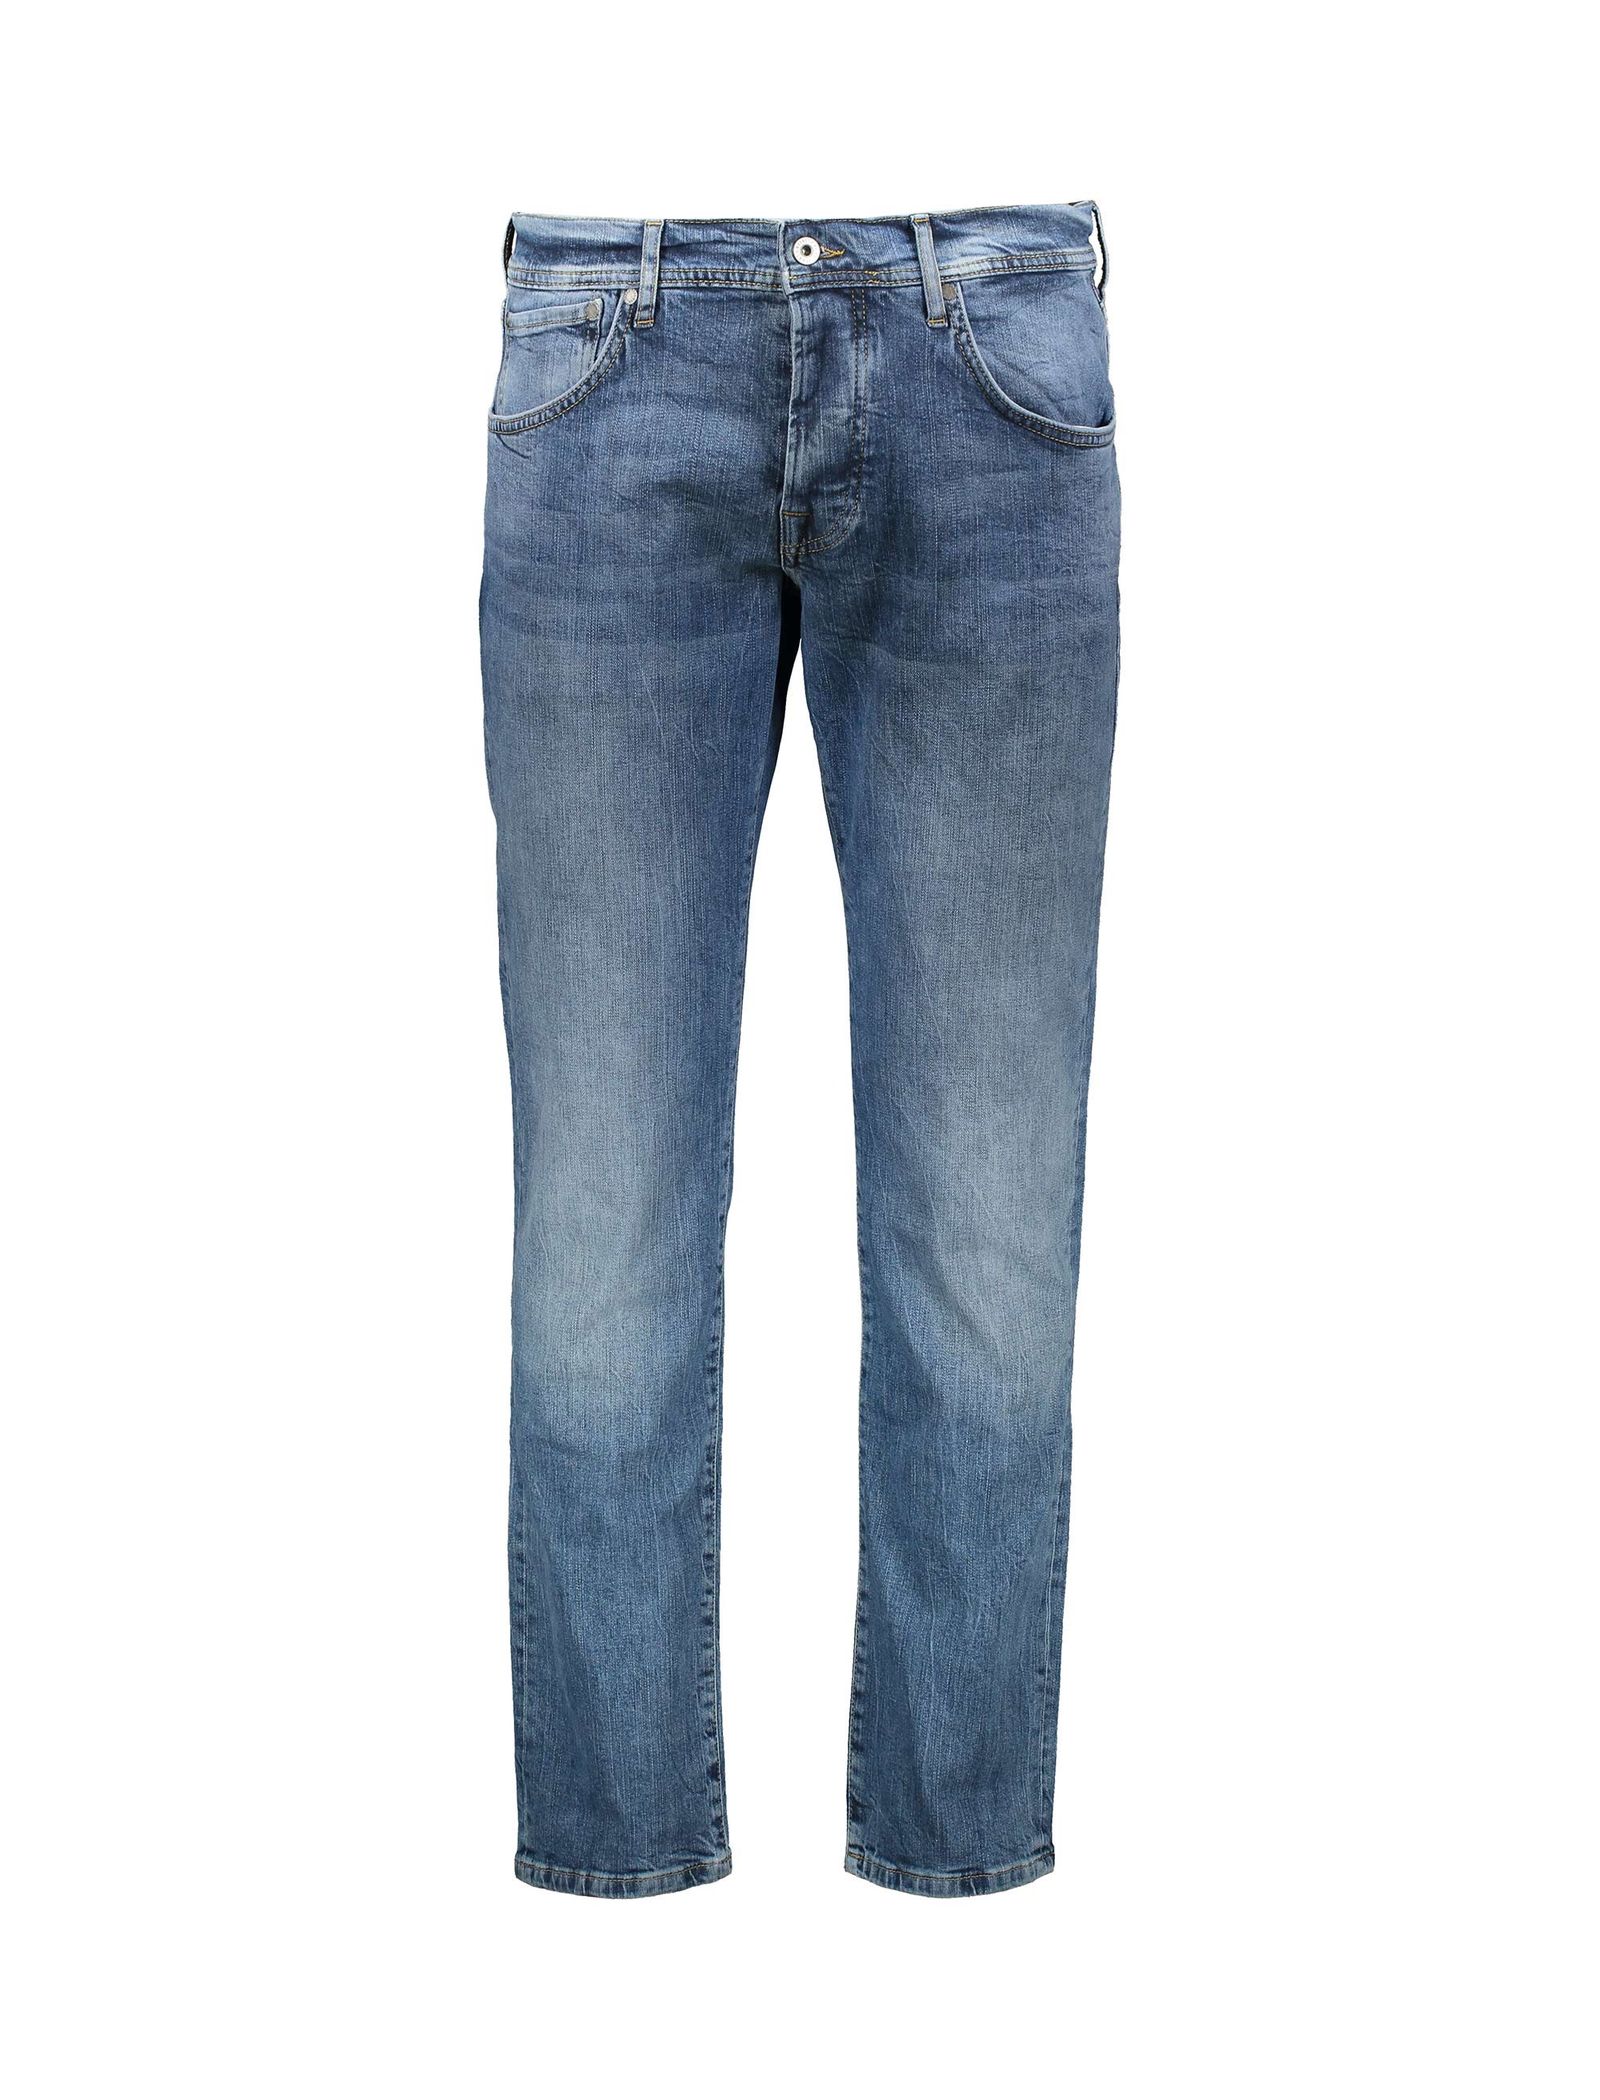 شلوار جین راسته مردانه - پپه جینز - آبي تيره - 2